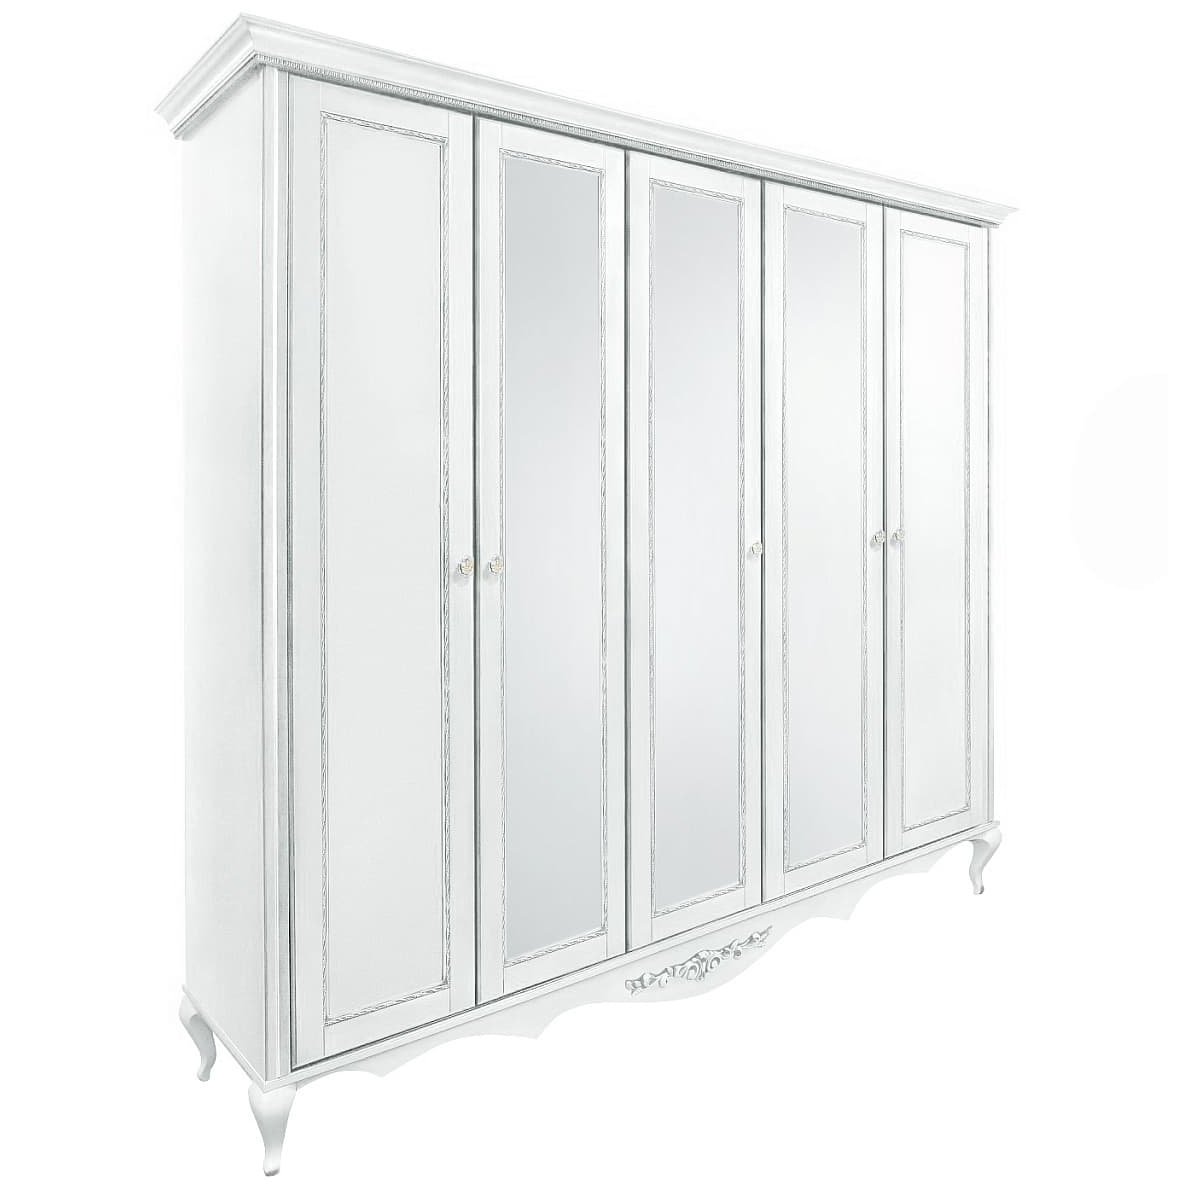 Шкаф платяной Timber Неаполь, 5-ти дверный с зеркалами 249x65x227 см цвет: белый с серебром (T-525)T-525